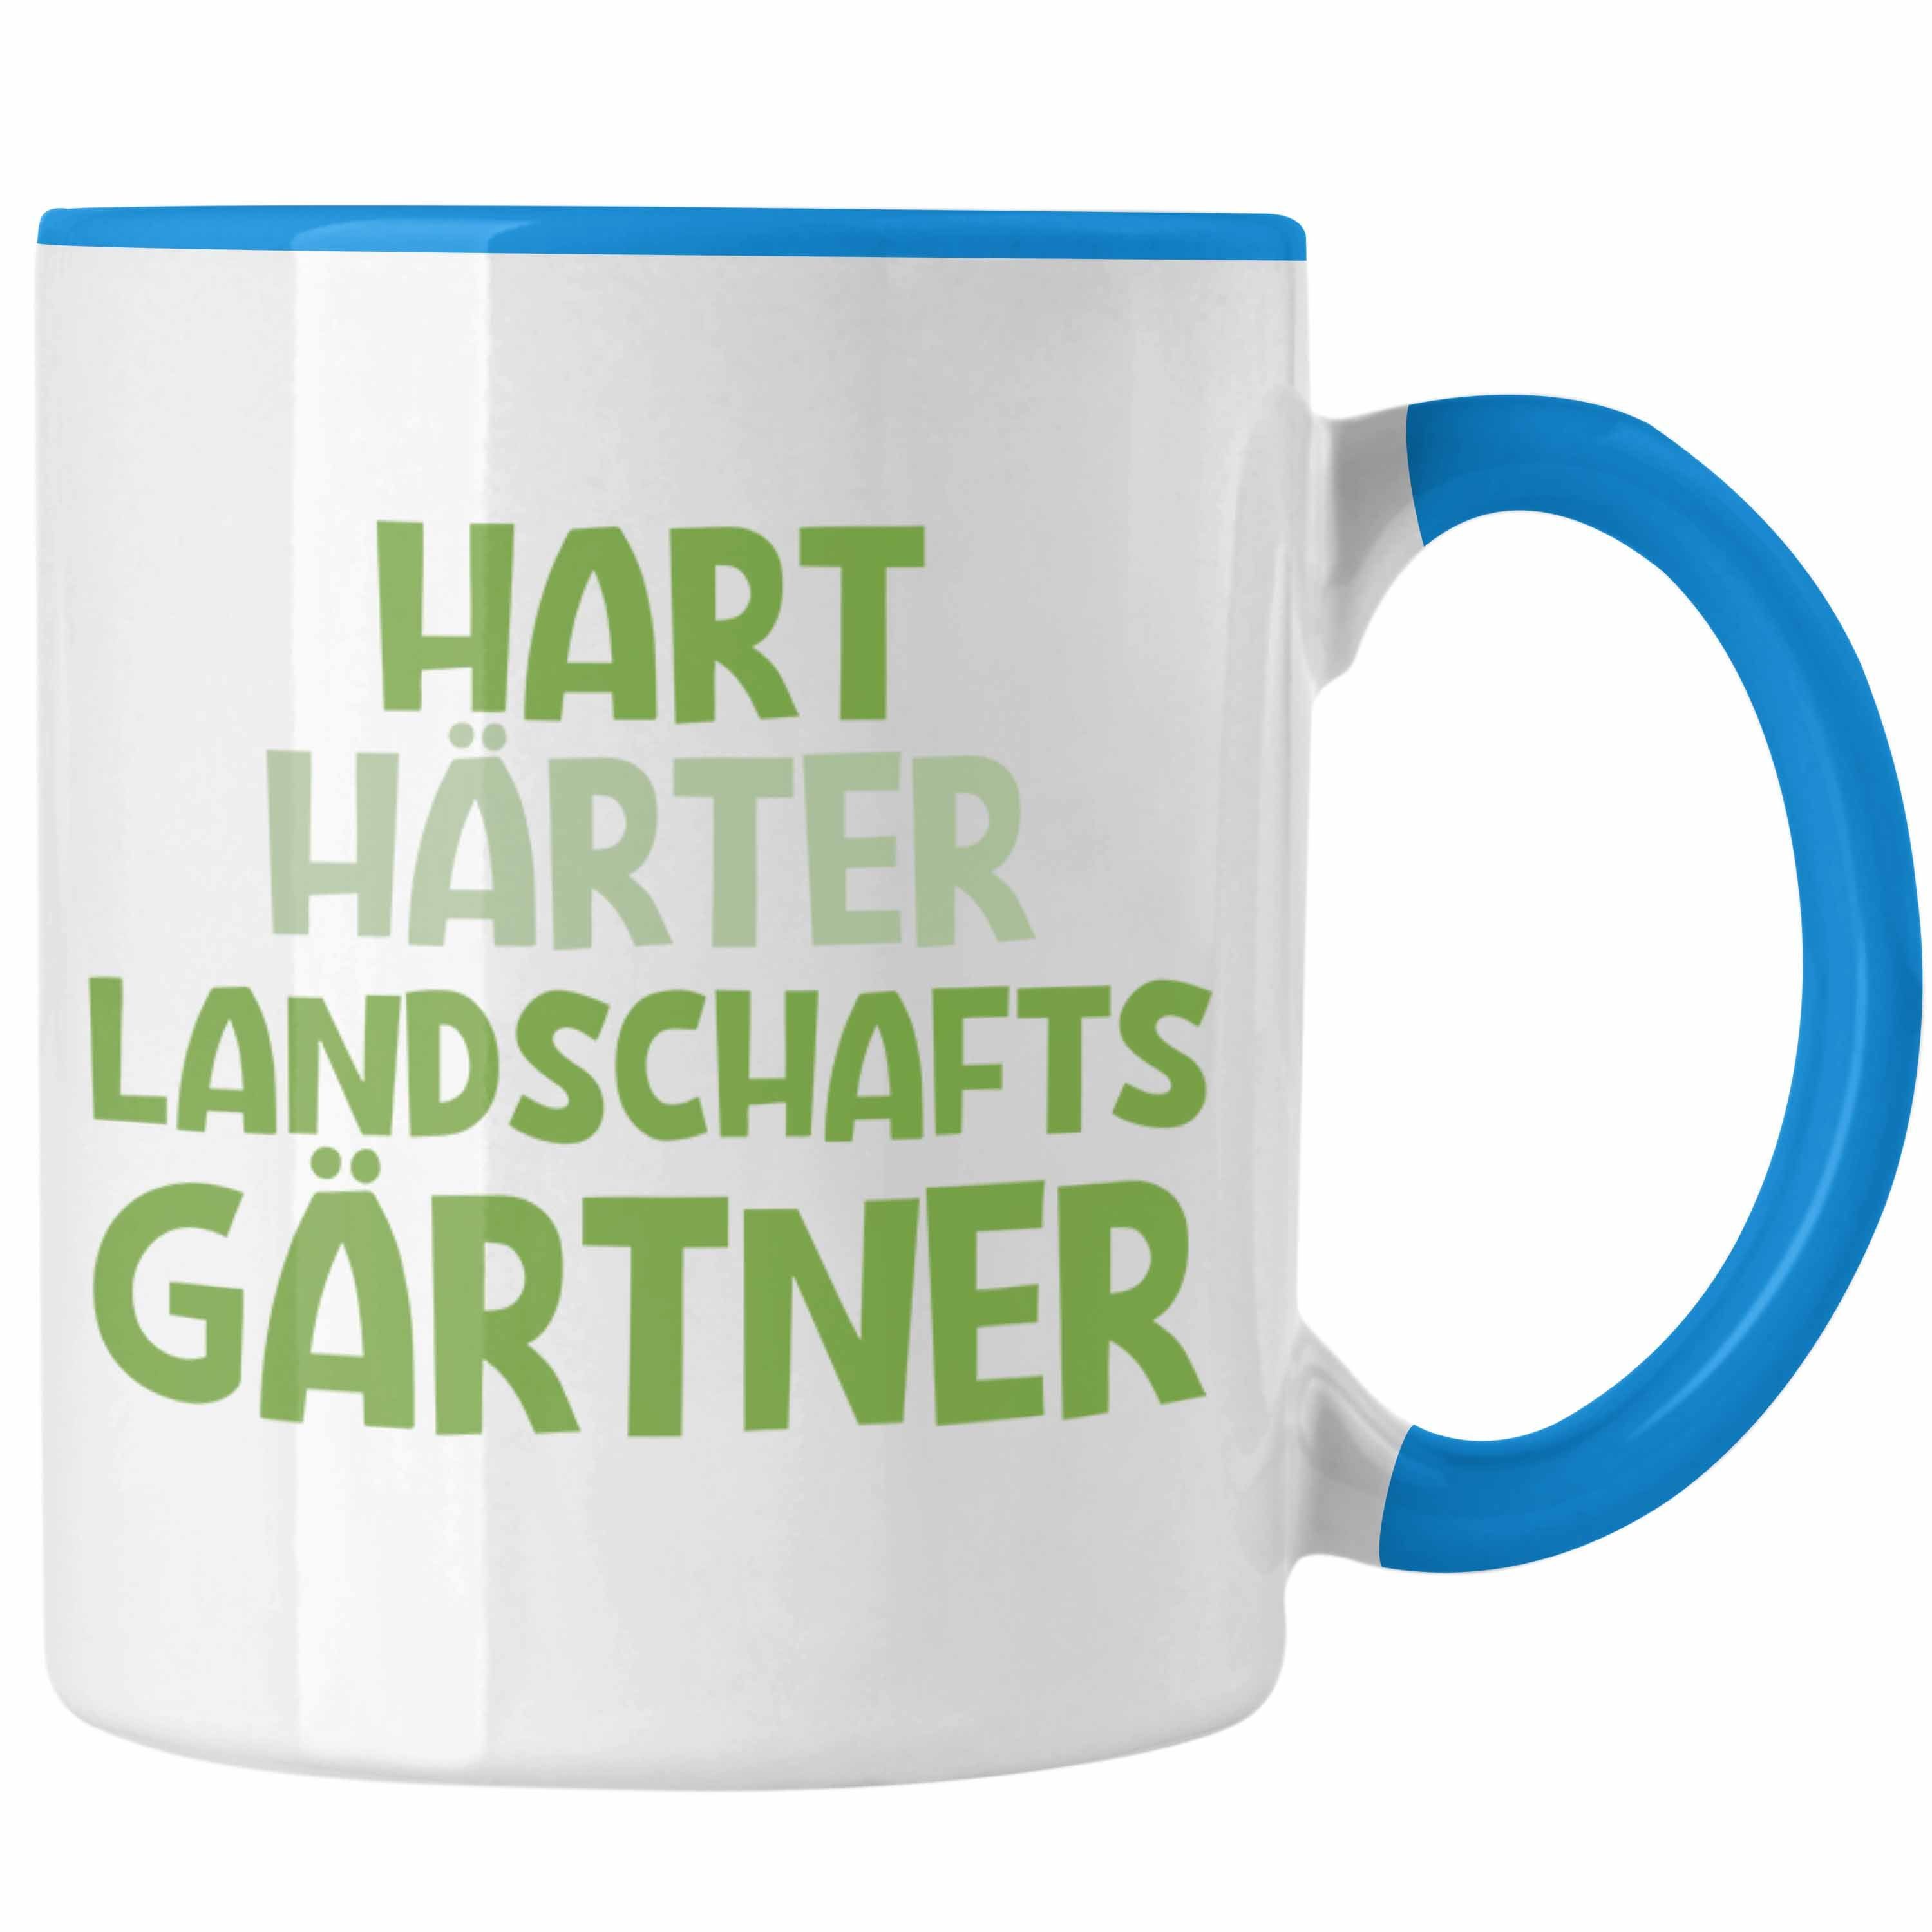 Garten Hart Hobbygärtner Gärtnerin Geschenk Trendation - Spruch Tasse Blau Gärtner Landschaftsgärtner Lustig mit Geschenkidee Tasse Trendation Härter